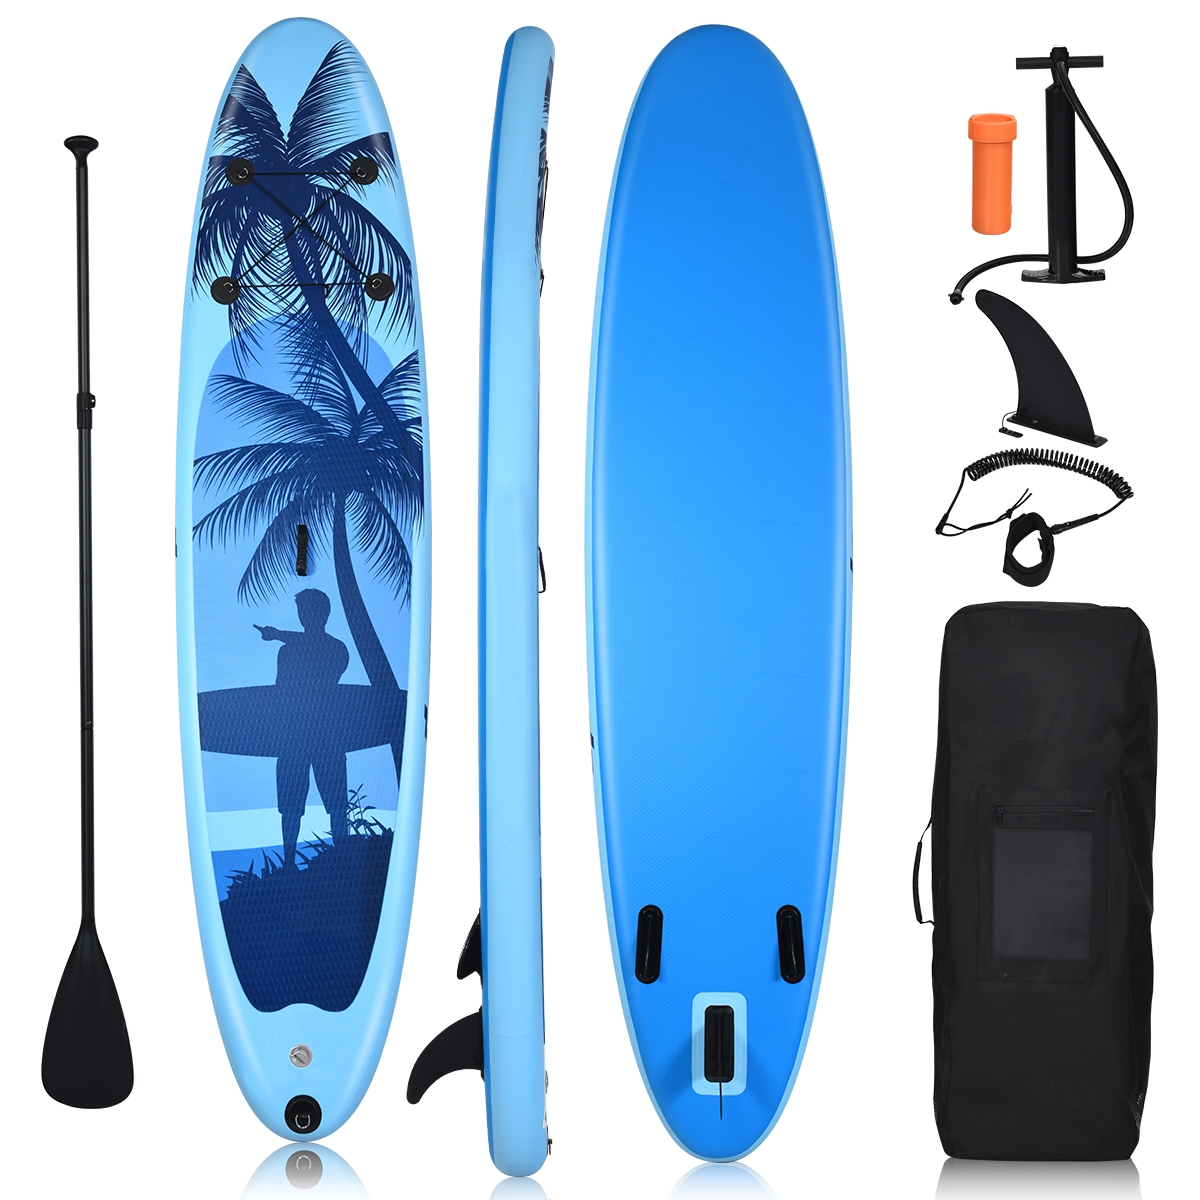 Costway 305 cm Tabla Hinchable de PVC Paddle Surf Sup con Remo de Ajustable/Bomba/Línea de Seguridad/Bolsa de Transporte y Aleta Central Azul